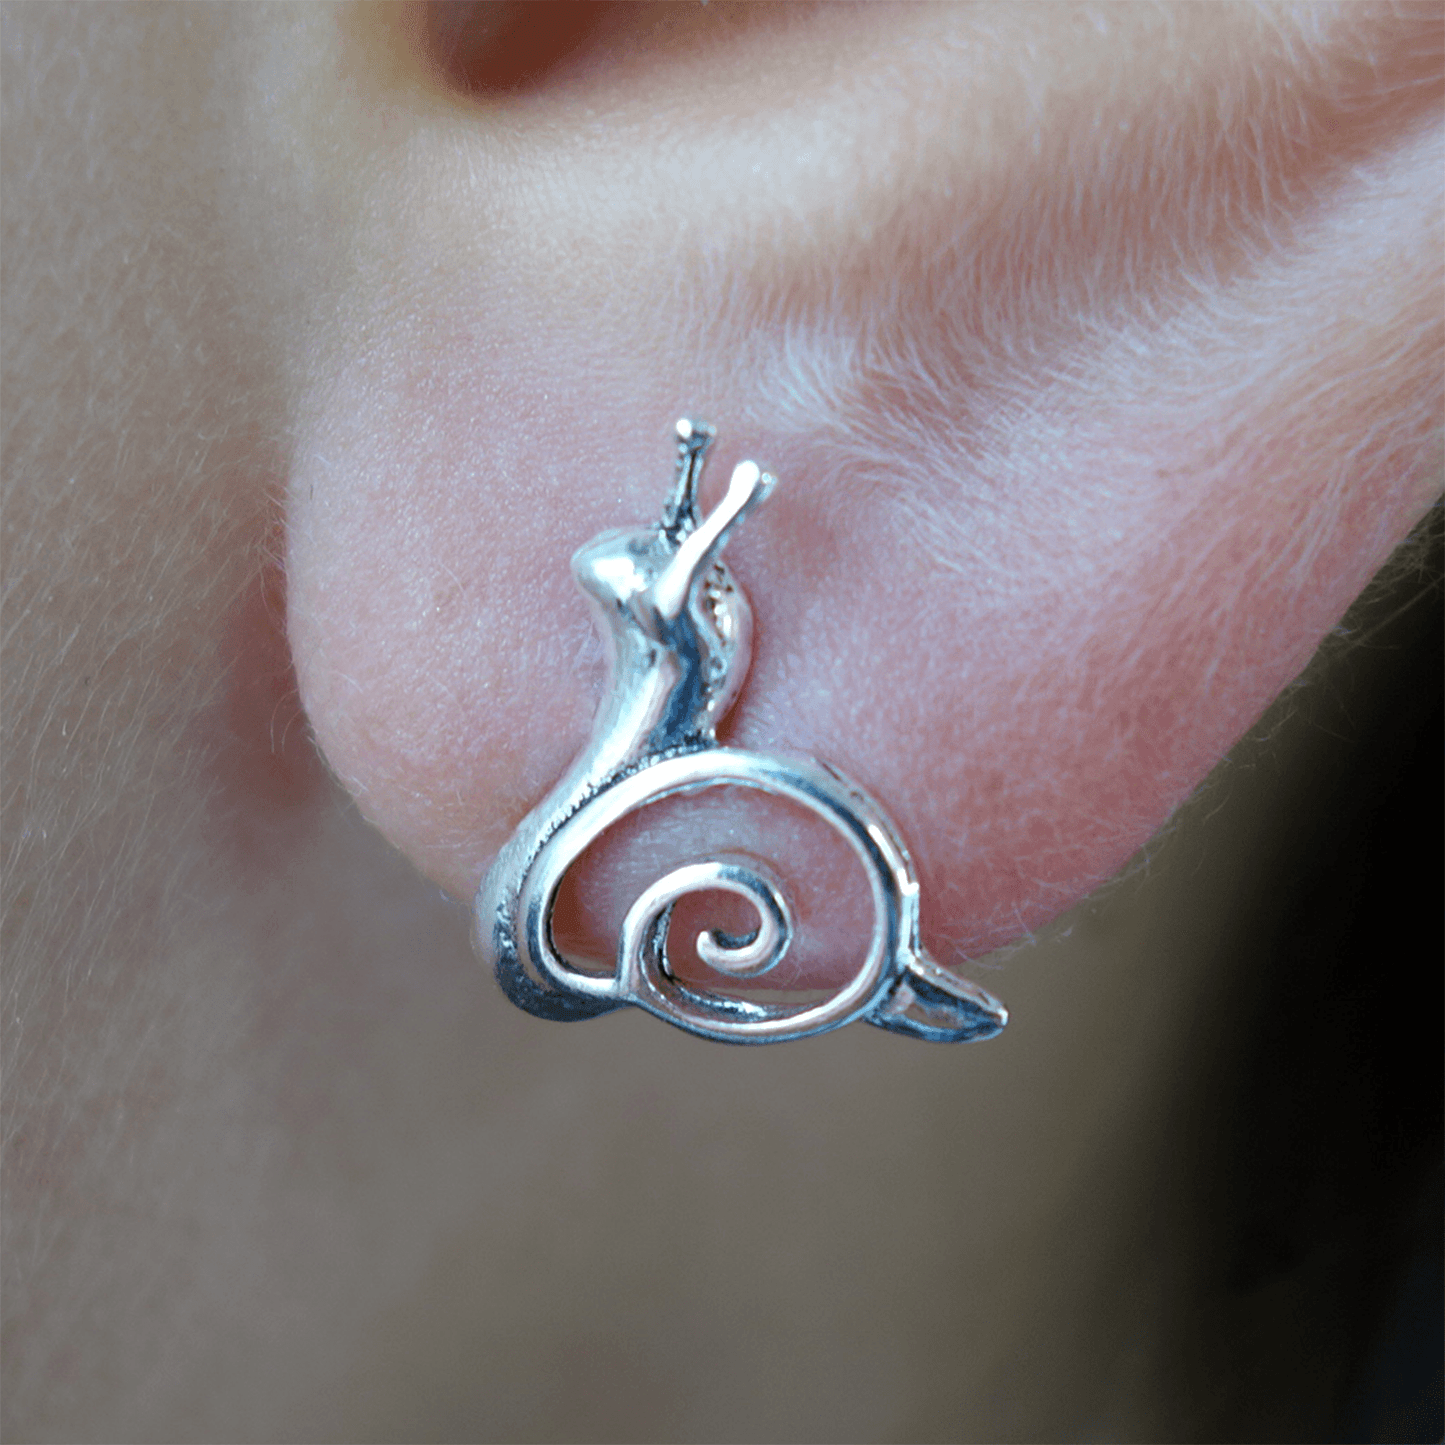 Pair of 925 Sterling Silver Snail Stud Earrings Ear Studs Ladies Girls Jewellery